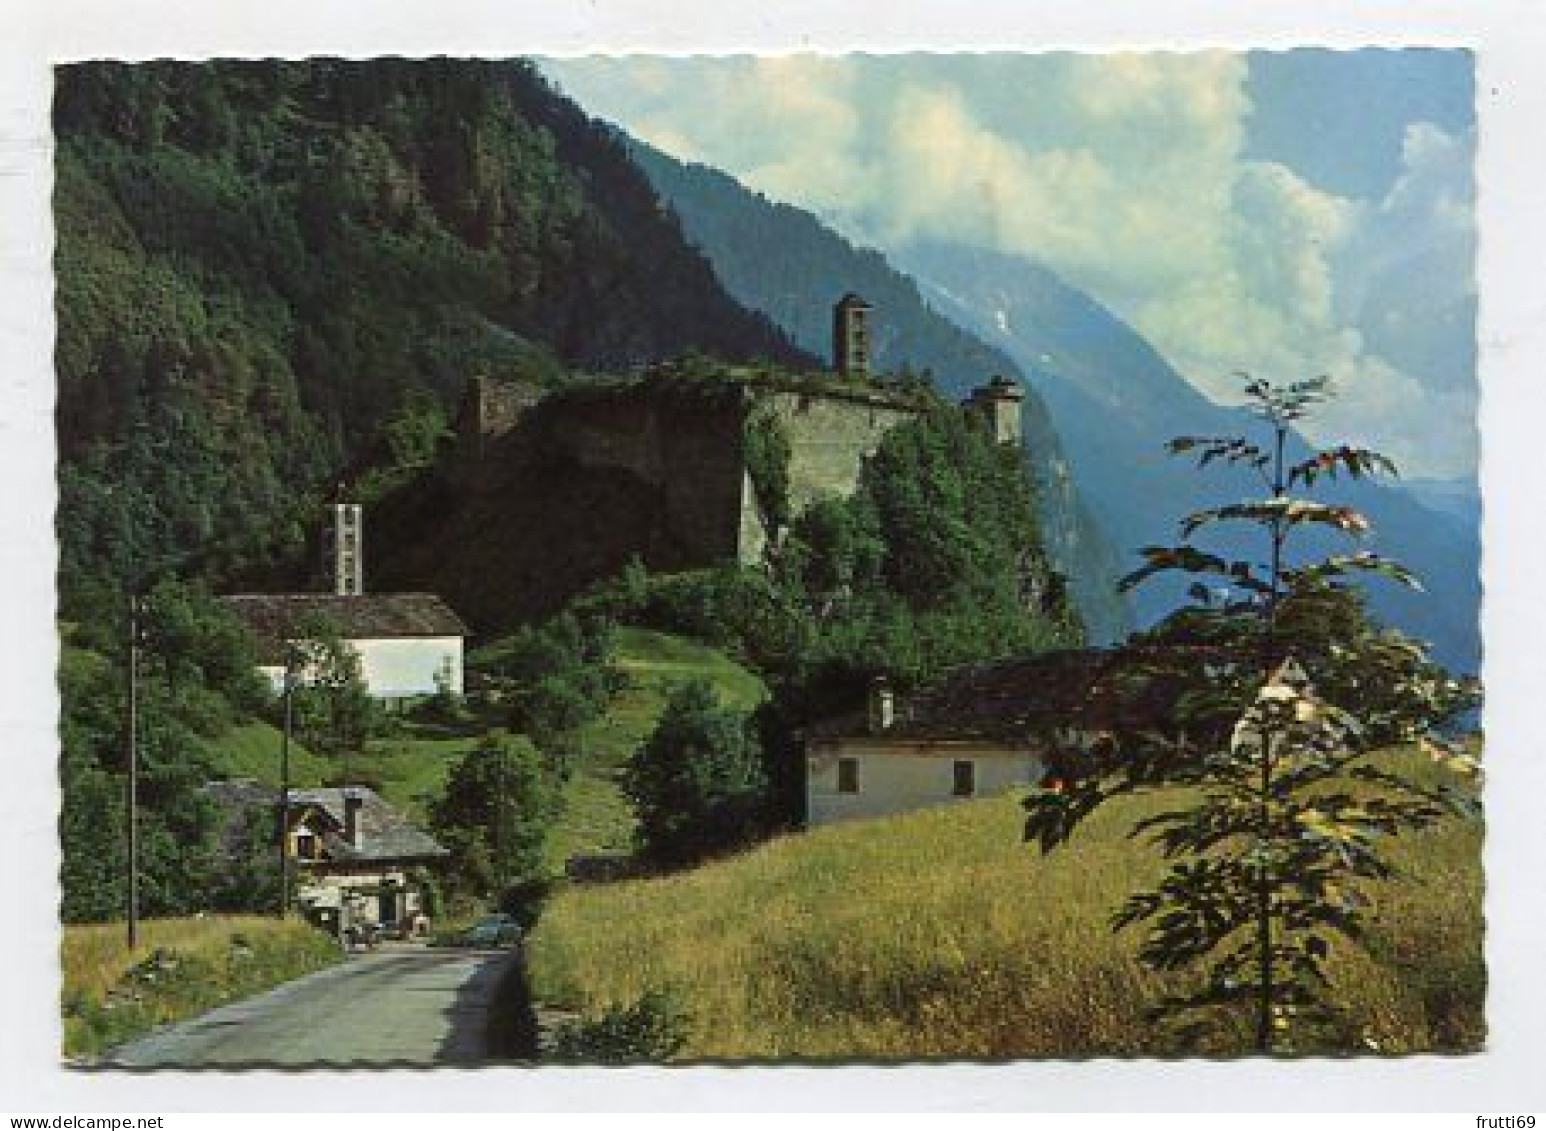 AK 124376 SWITZERLAND - Castello Di Mesocco - Valle Mesolcina - Mesocco